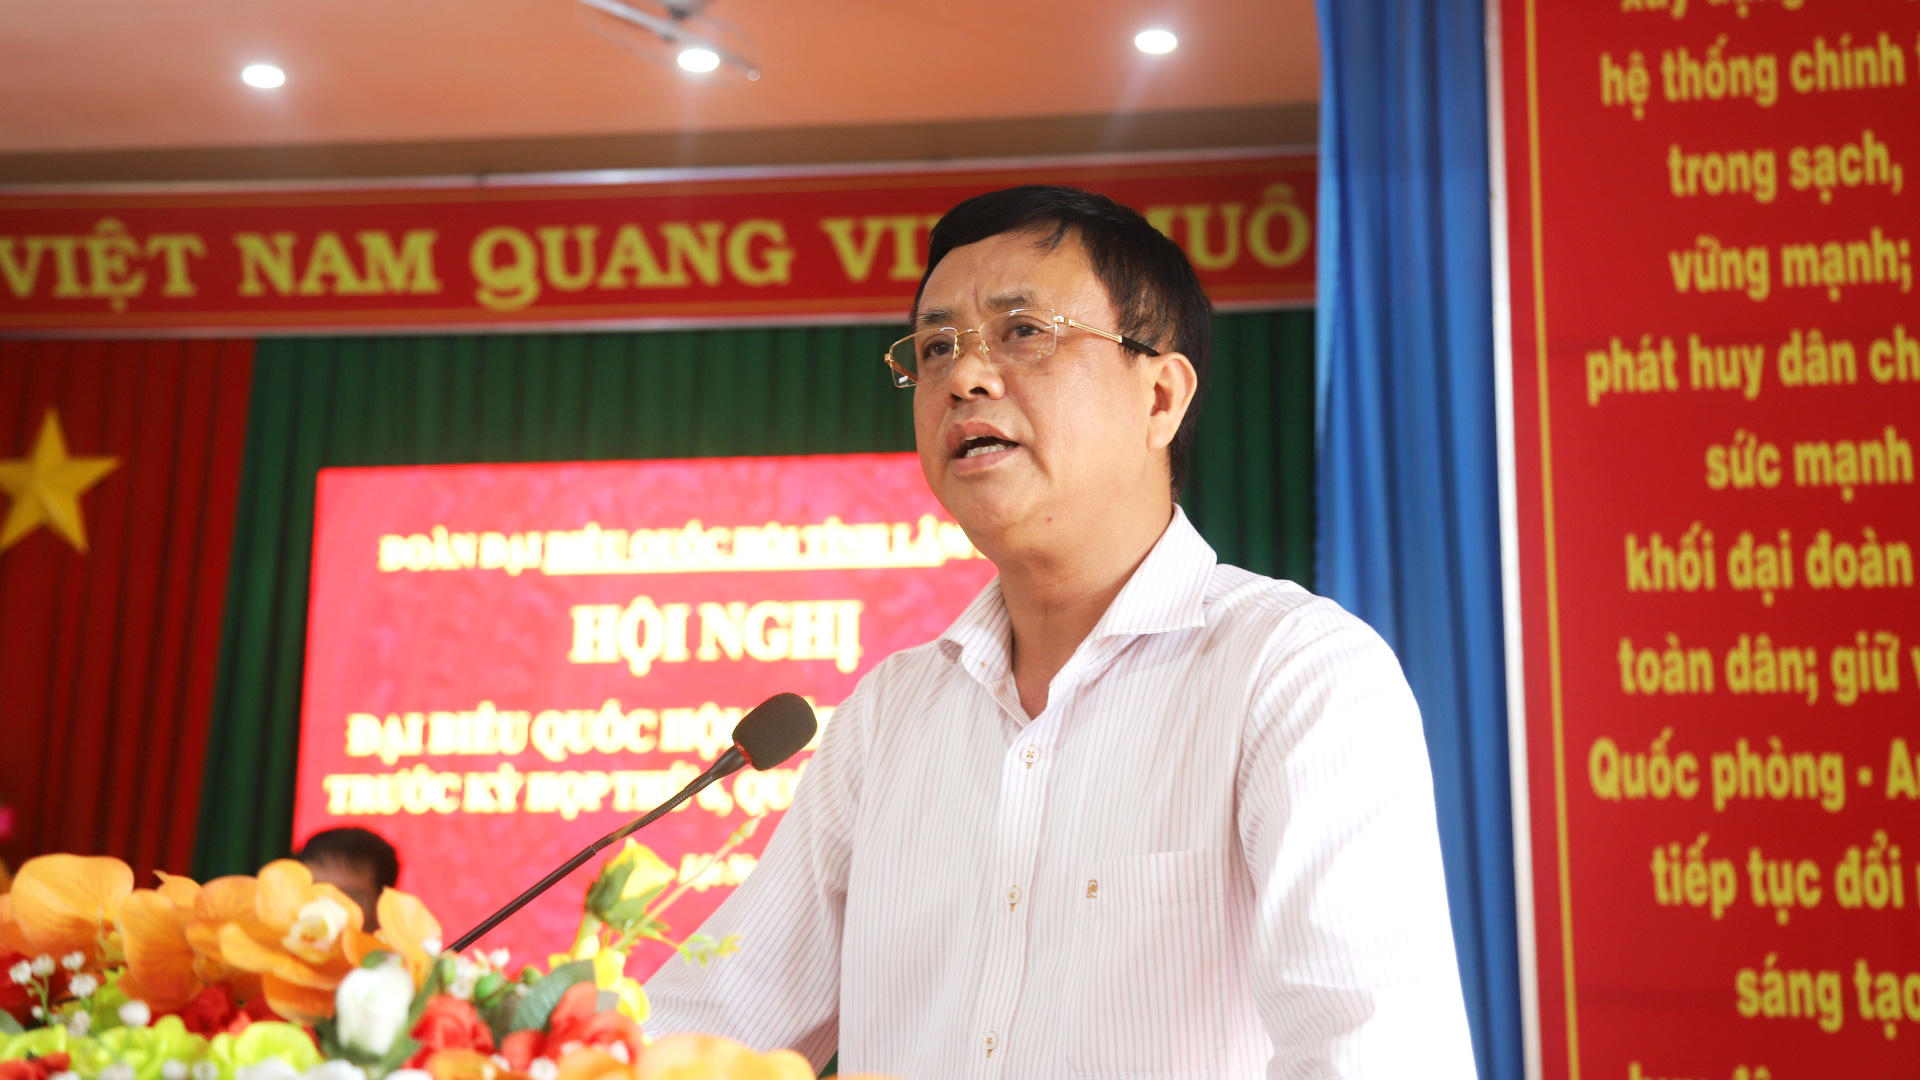 Đồng chí Đồng Văn Trường - Phó Chủ tịch UBND huyện Bảo Lâm tiếp thu, giải trình ý kiến của cử tri thuộc thẩm quyền